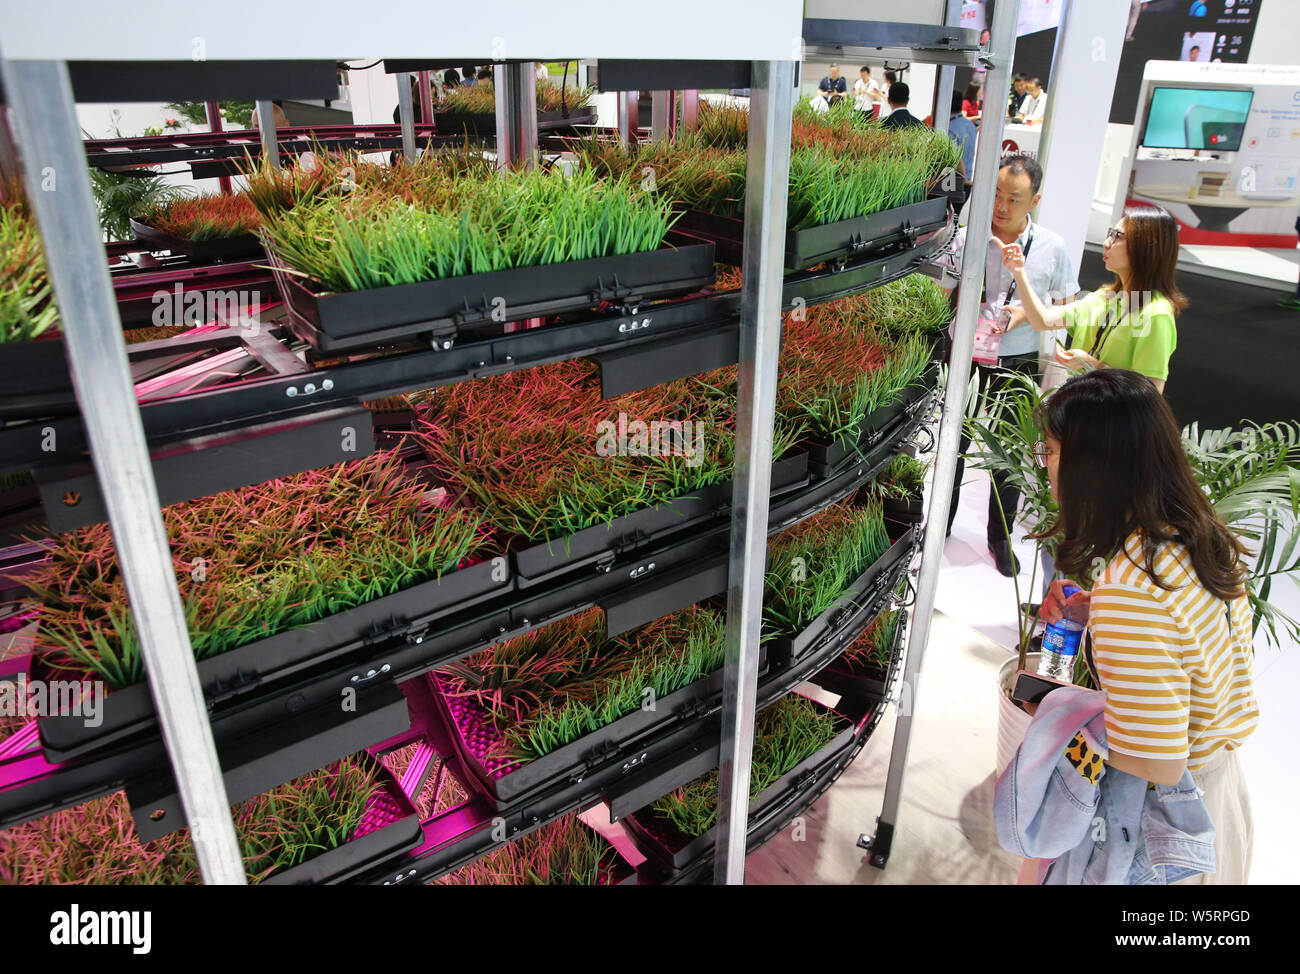 Besucher sehen die Vertikale Landwirtschaft am Stand von Grocube während der 2019 International Consumer Electronics Show (CES Asien Asien 2019) in Shanghai, C Stockfoto